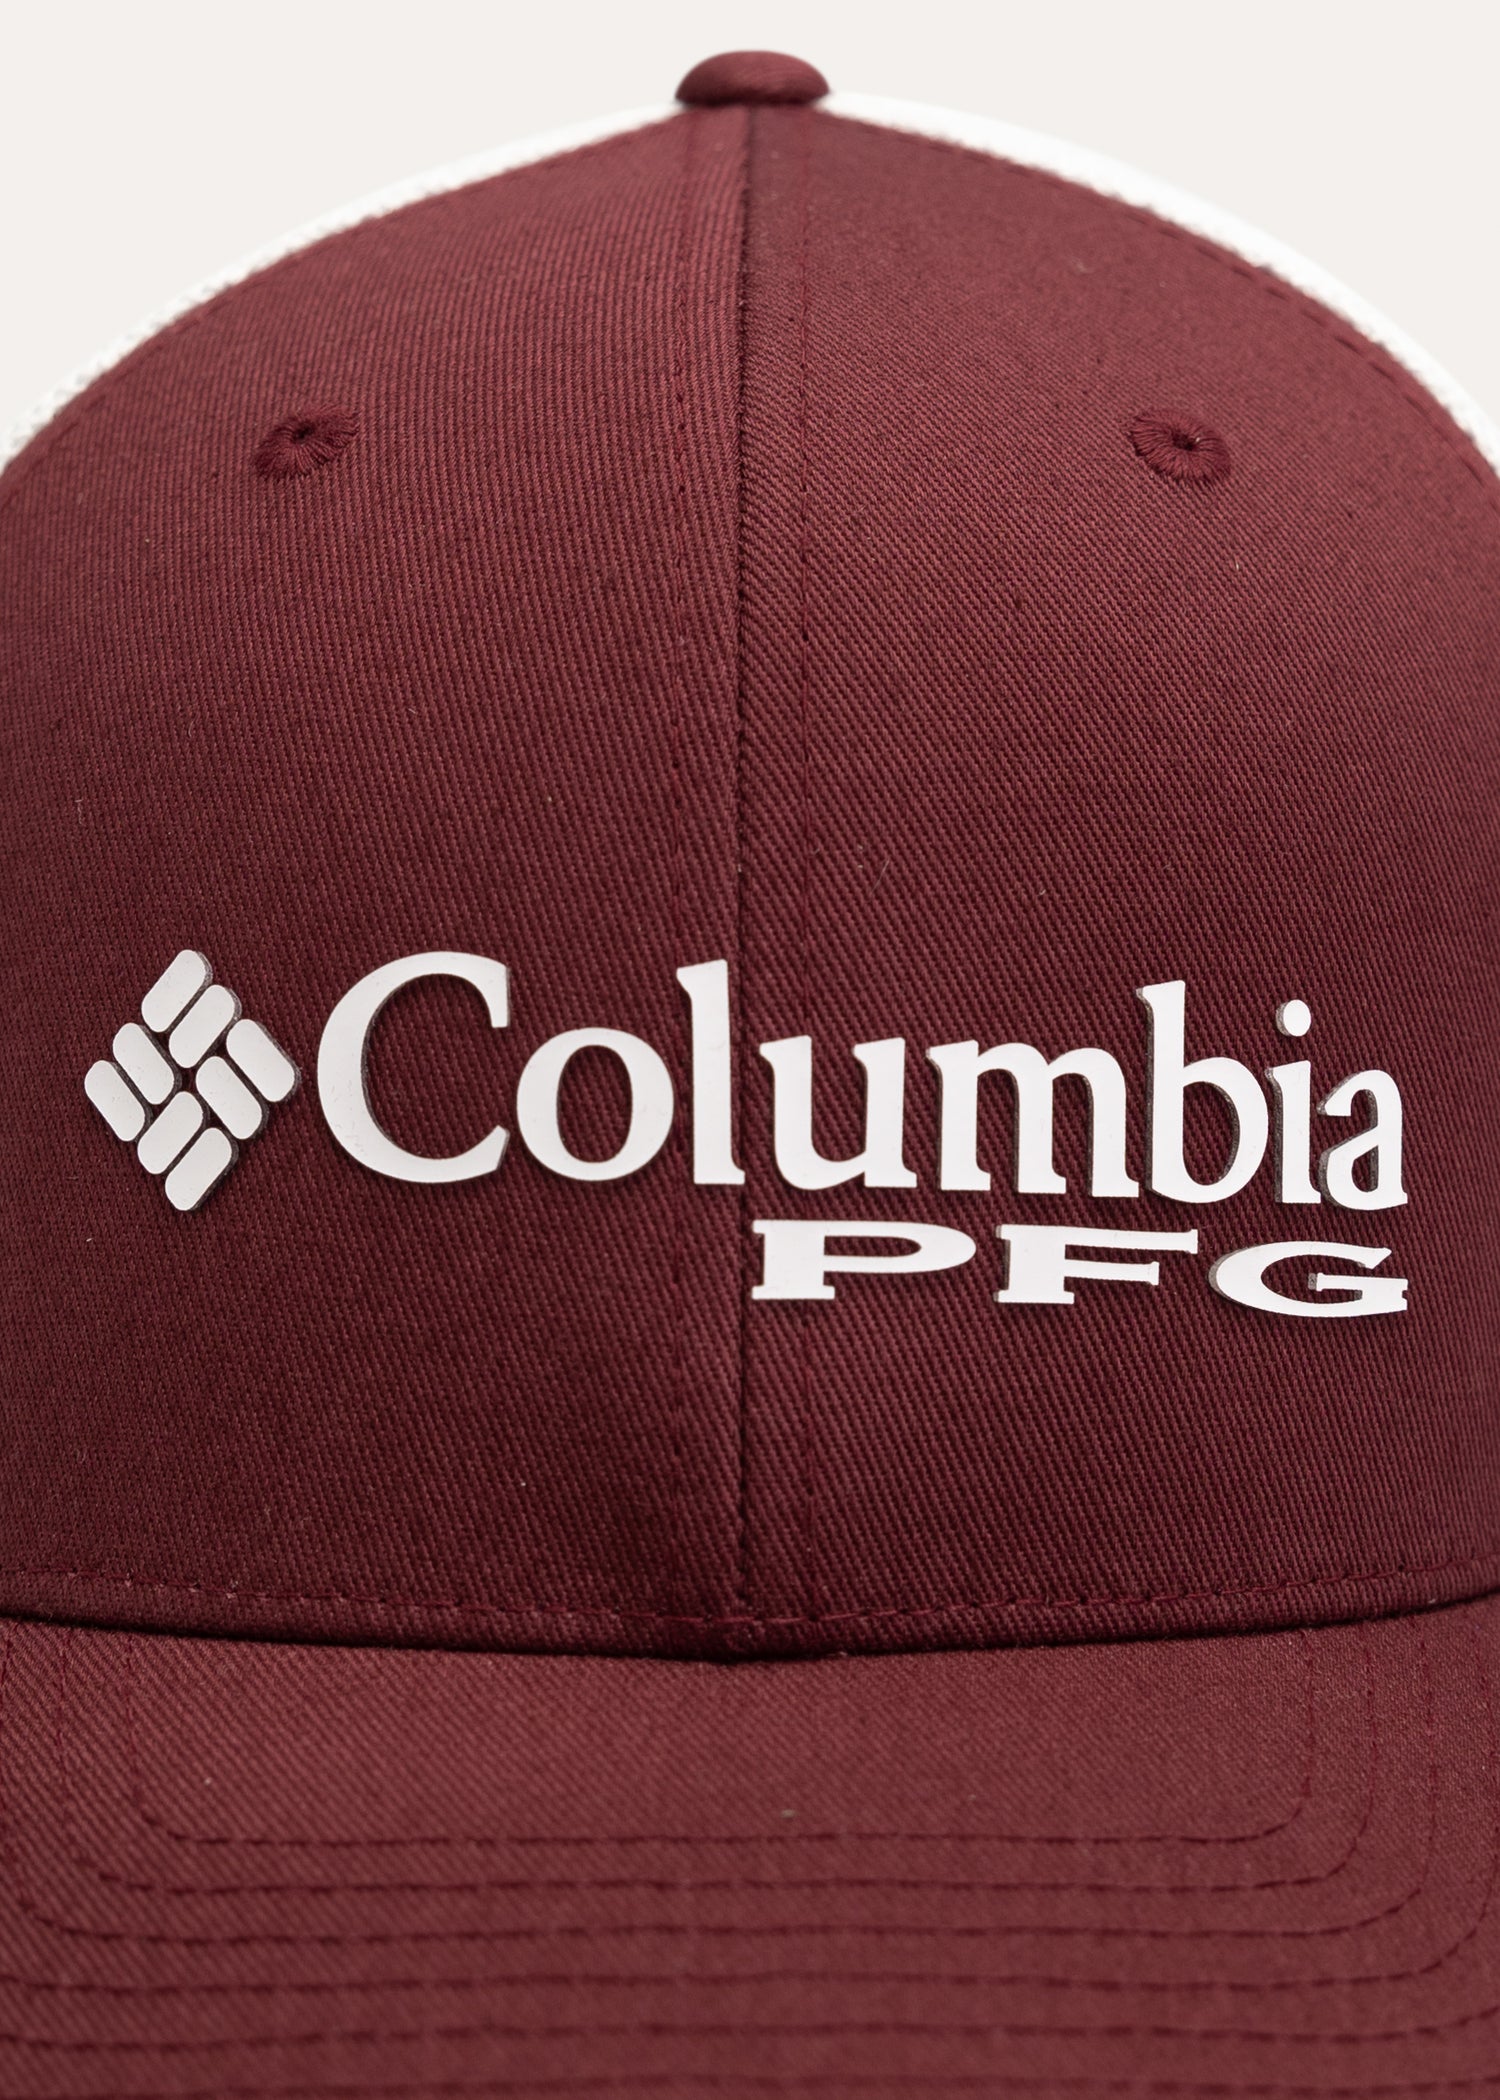 Columbia PFG Mesh Snap Back Ball Cap